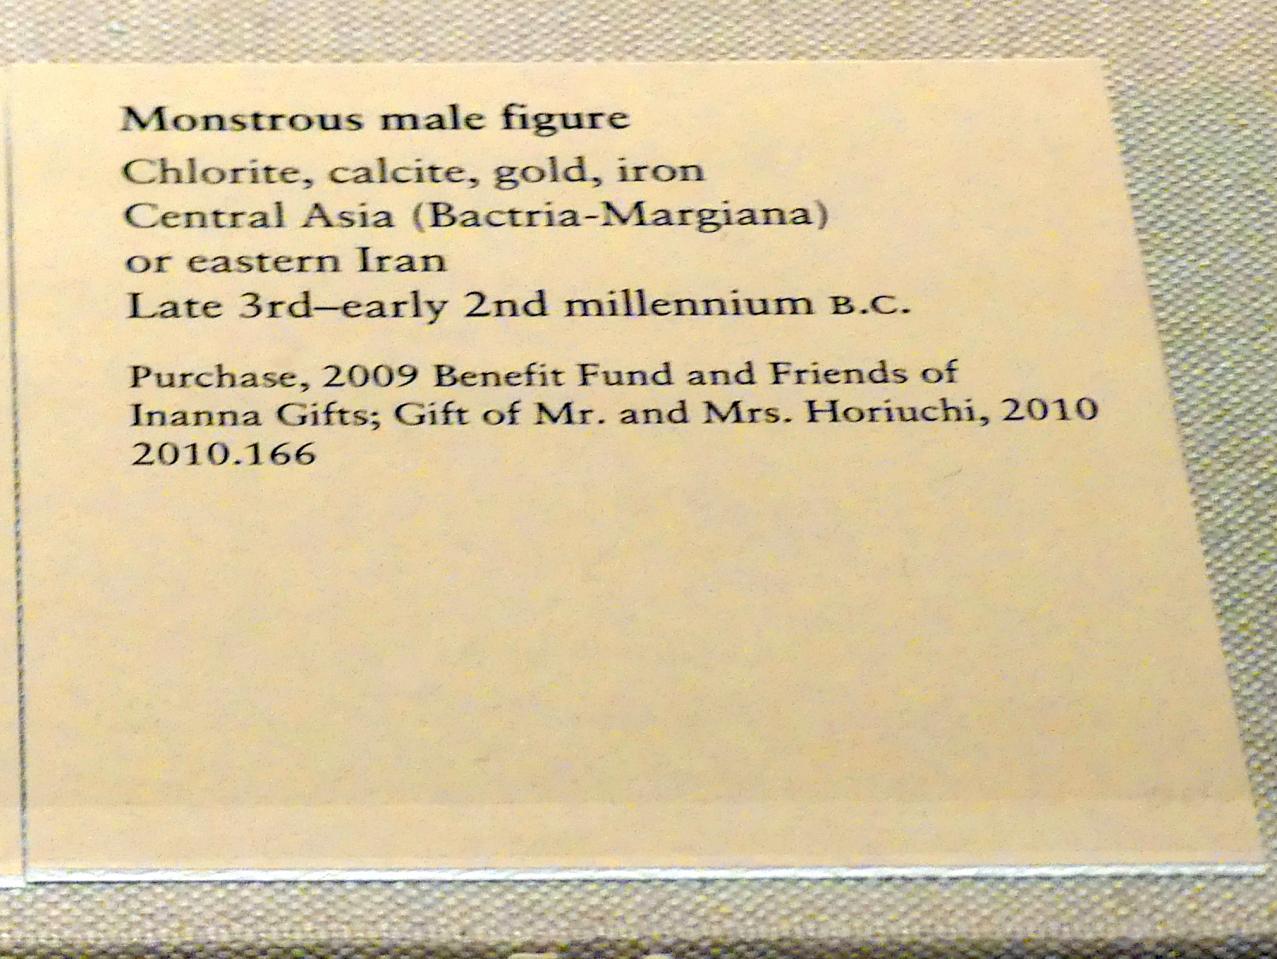 Monströse männliche Figur, 2200 - 1800 v. Chr., Bild 2/2